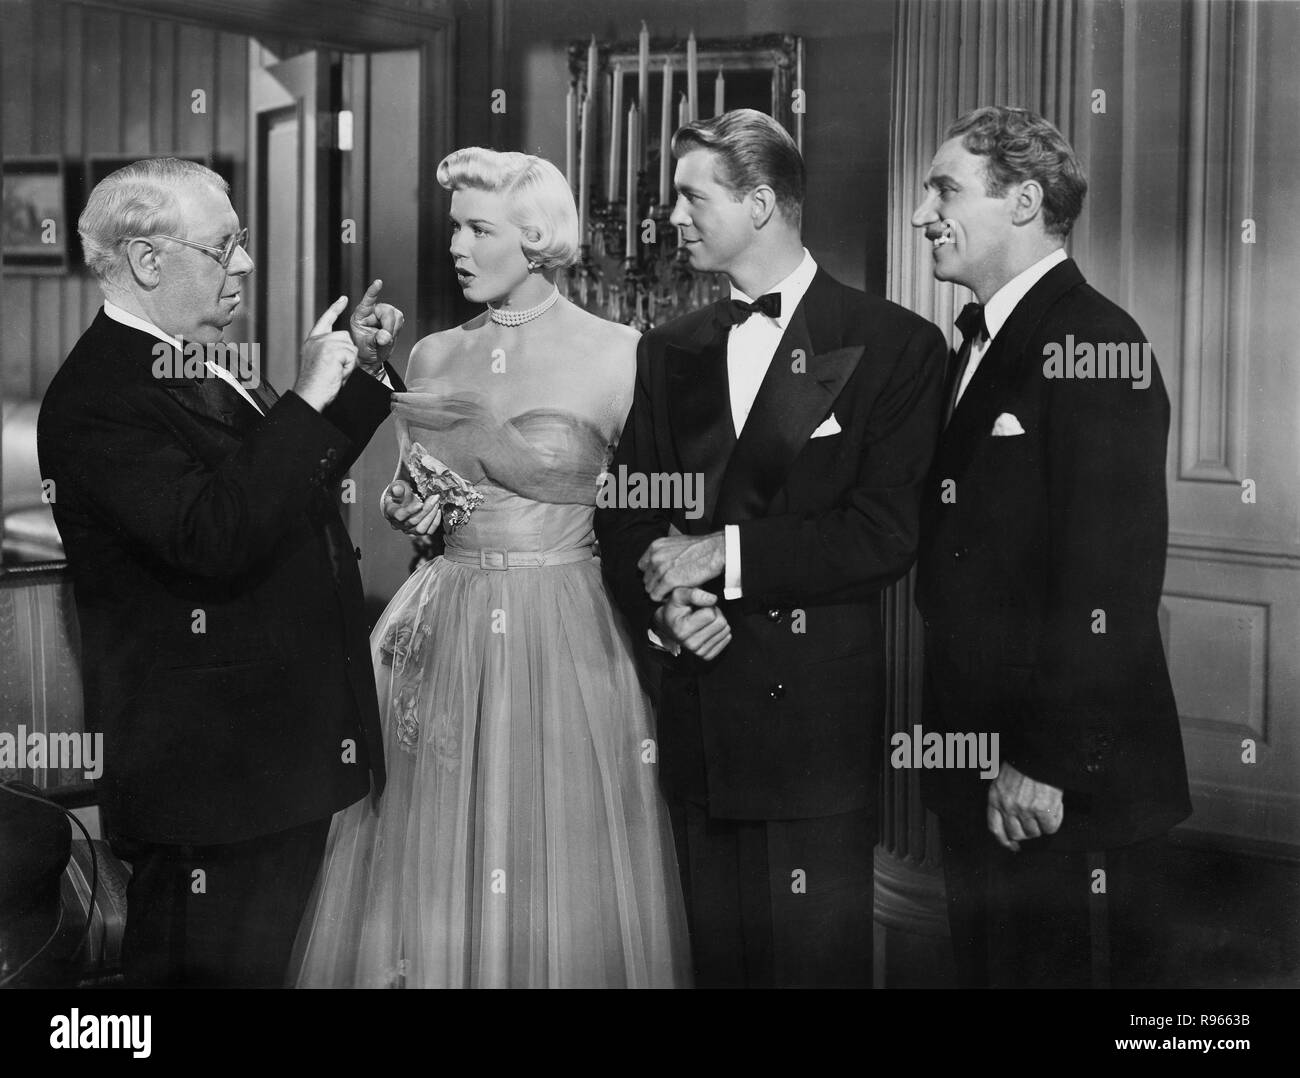 Das Wiegenlied vom Broadway (Lullaby of Broadway) USA 1951 Regie: David Butler Darsteller: Doris Day, Gene Nelson, S.z. Sakall Stock Photo